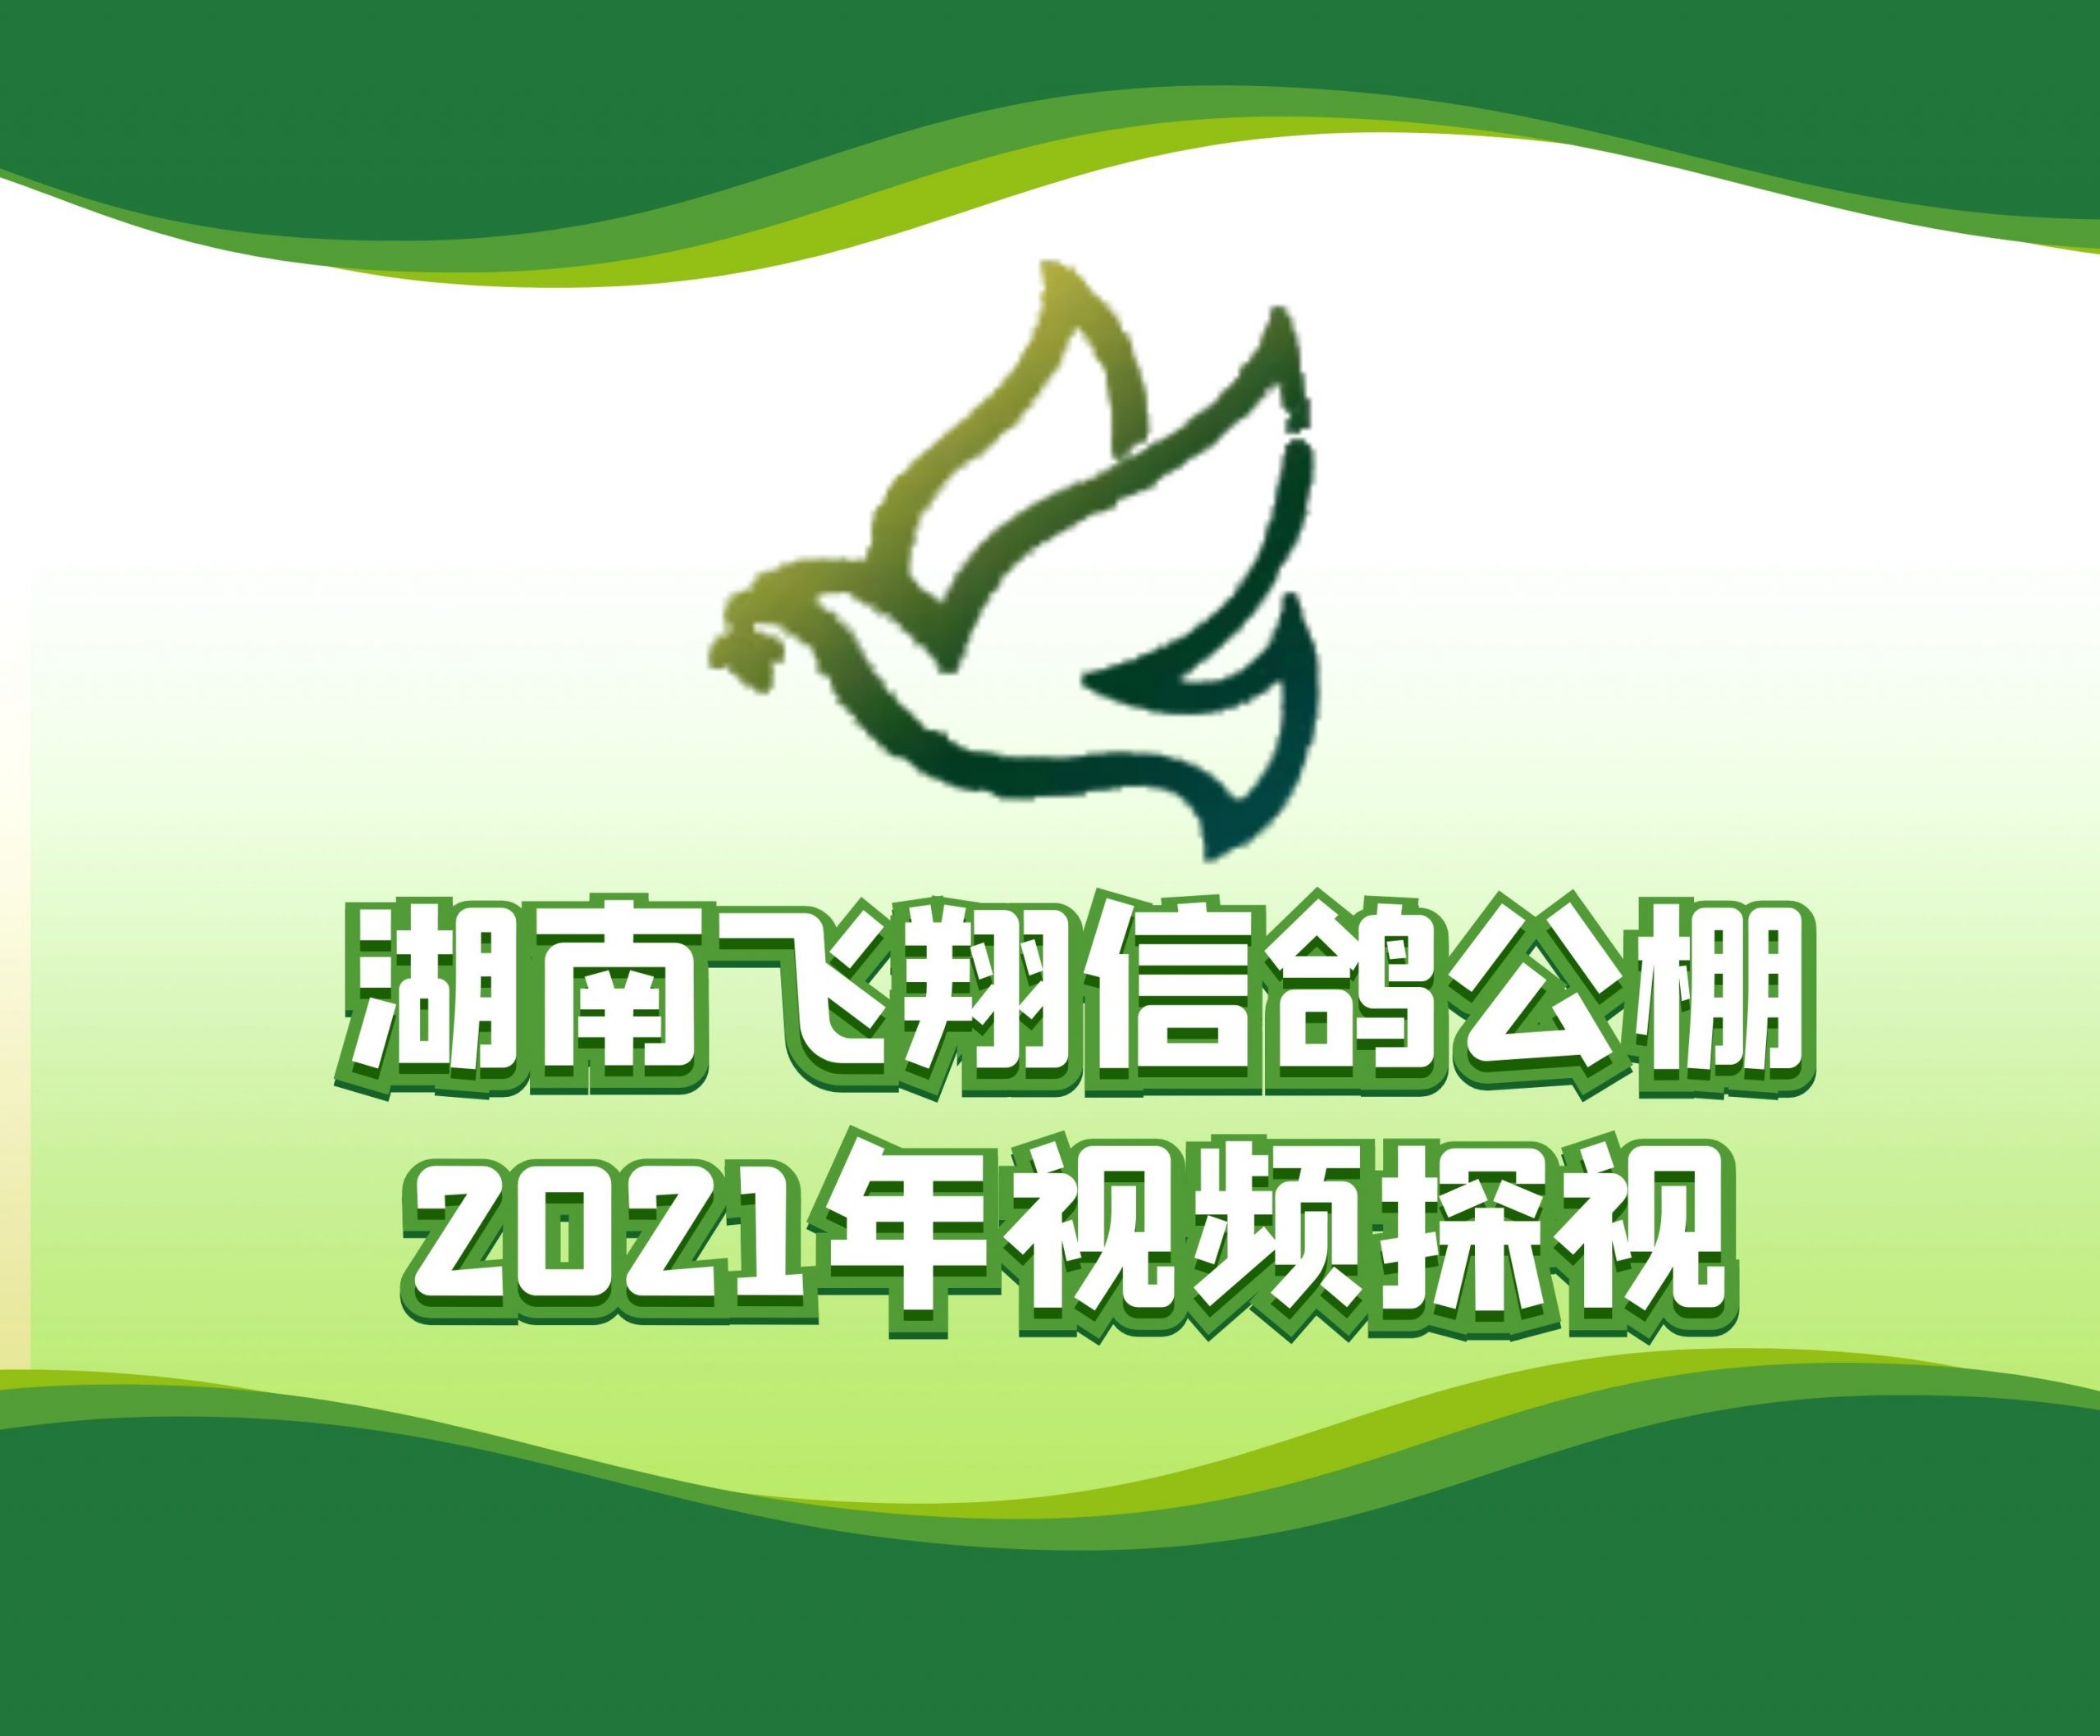 龚云龙-2021-20-0009712